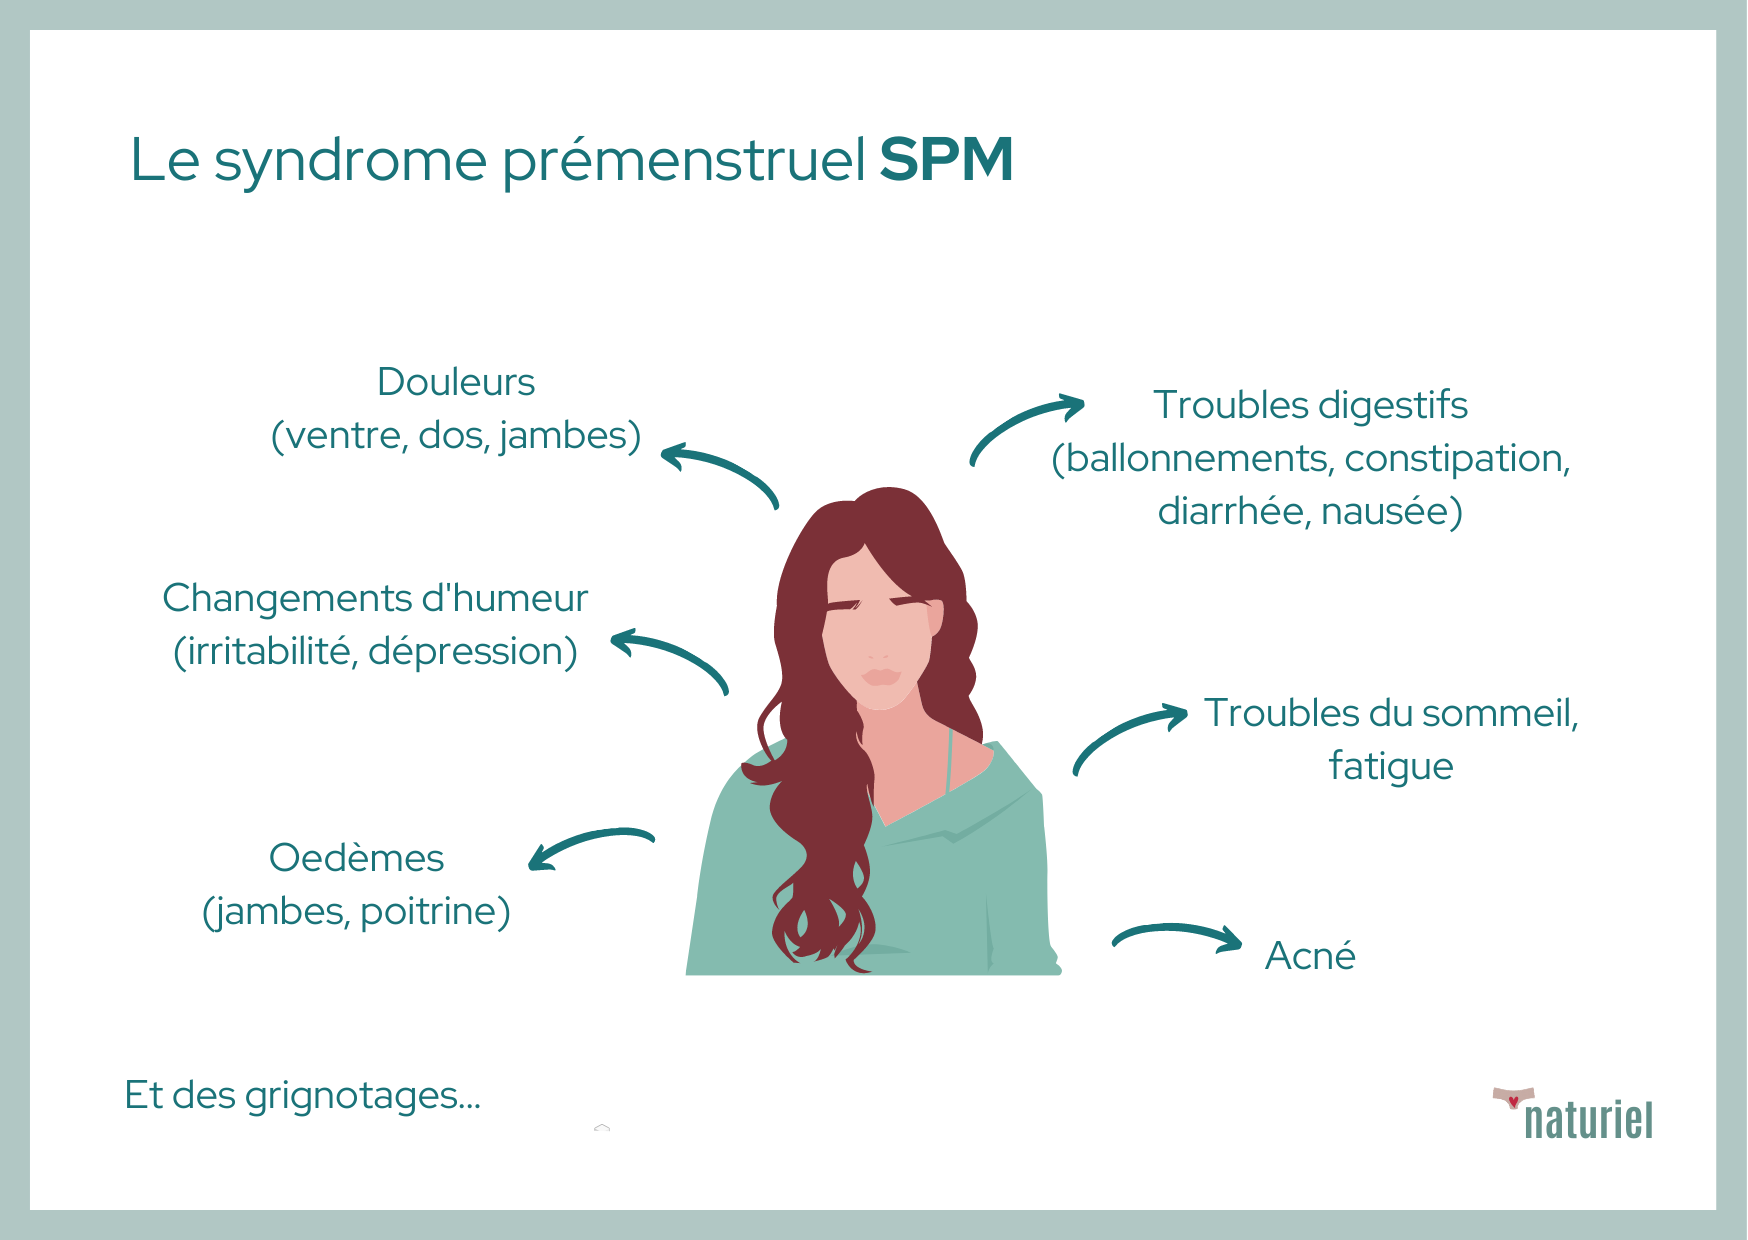 douleurs menstruelles et symptômes SPM